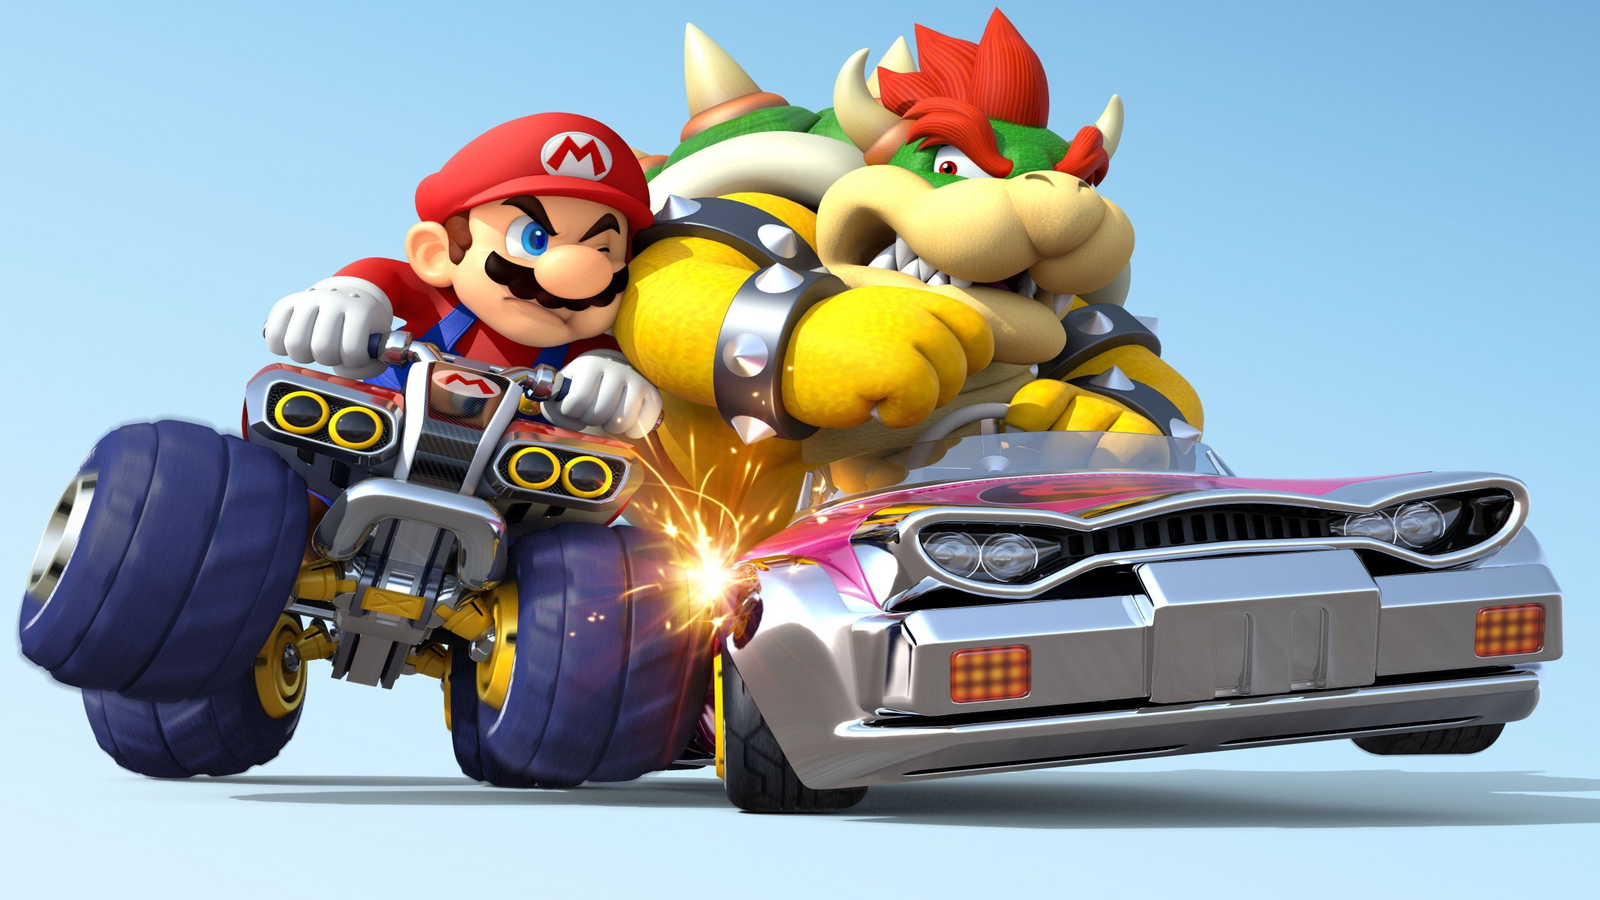 Mario Kart 8 Deluxe - Final Race + True Ending & Credits 